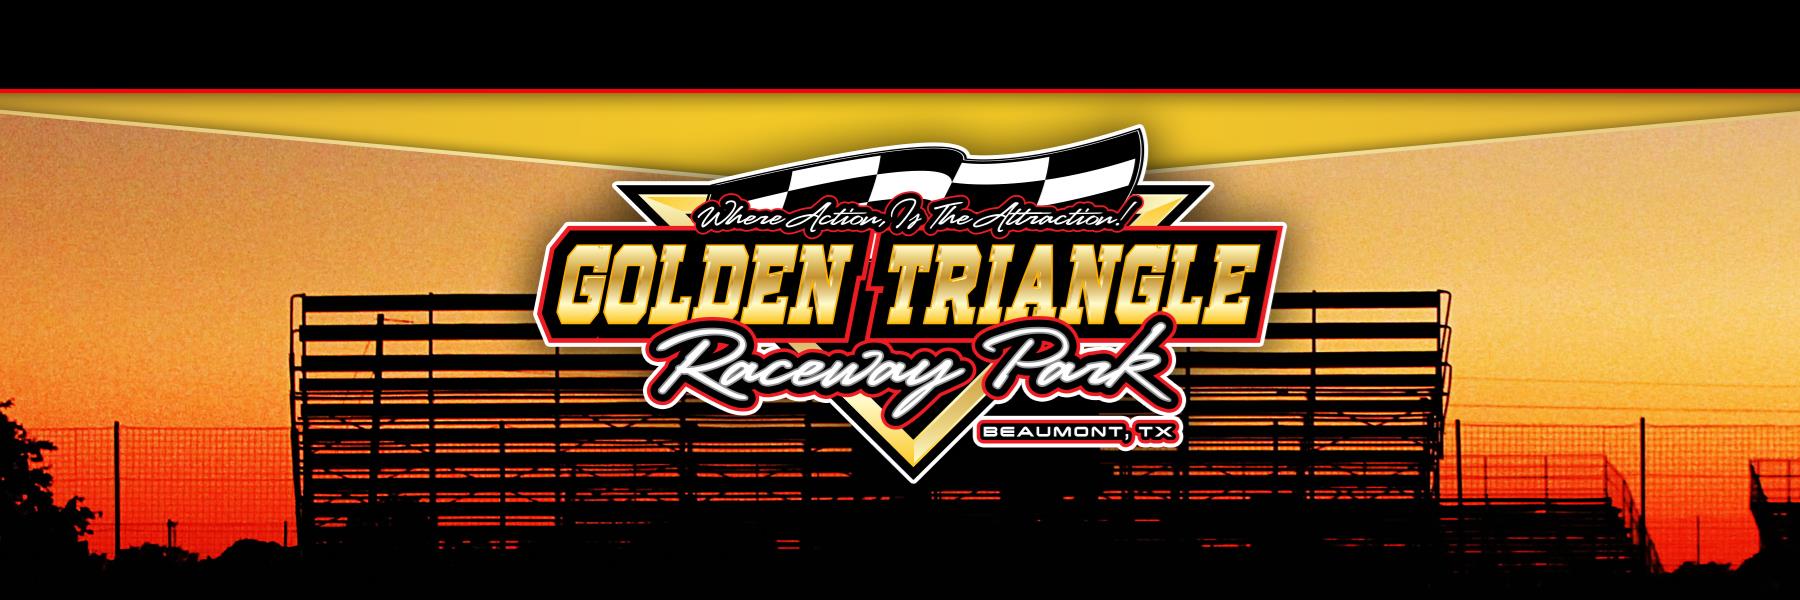 7/20/2019 - Golden Triangle Raceway Park